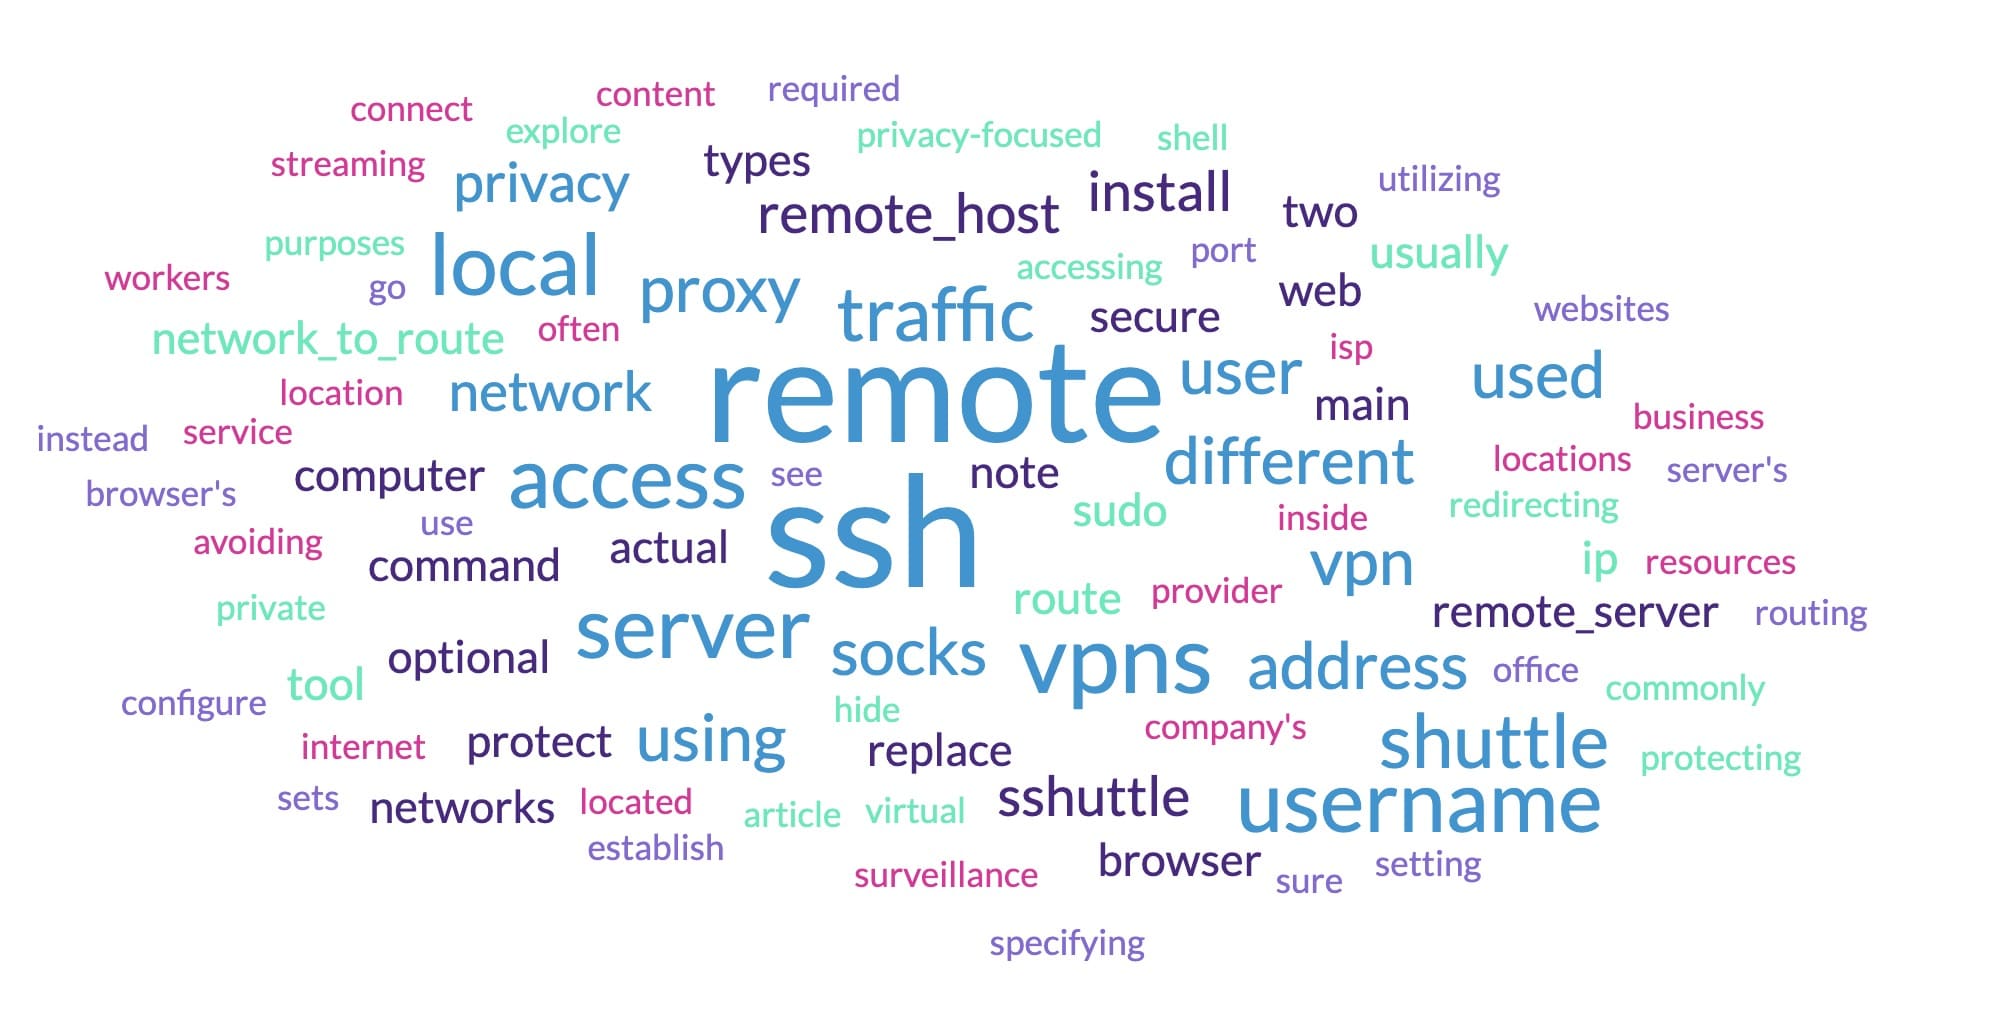 VPNs: como o SSH pode funcionar como VPN